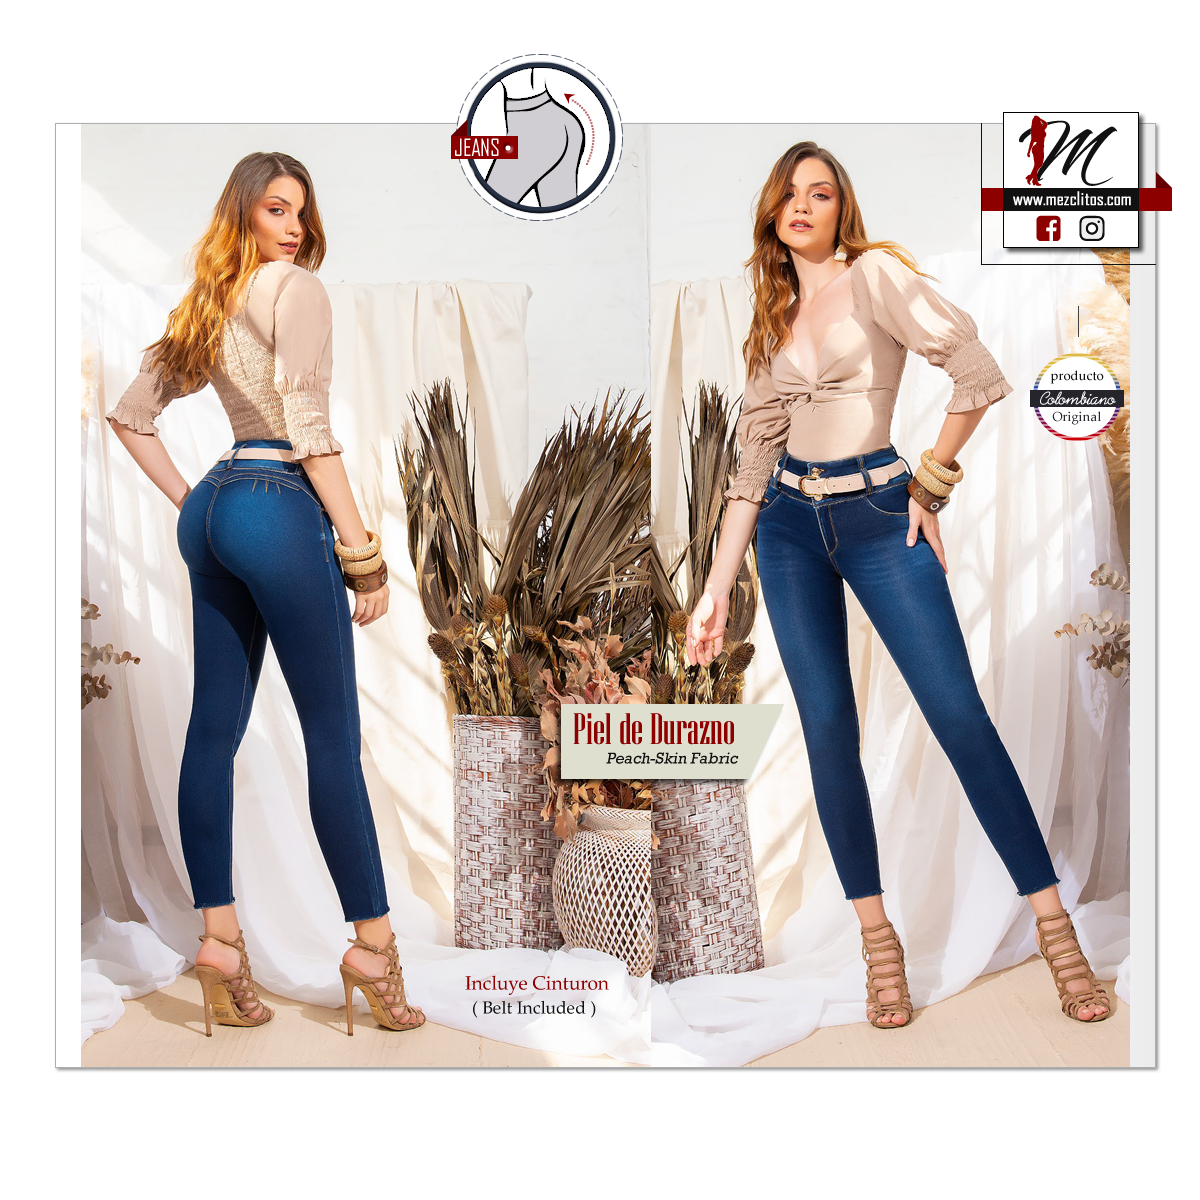 ILN Jeans 139 - 100% Jeans Colombianos – Mezclitos